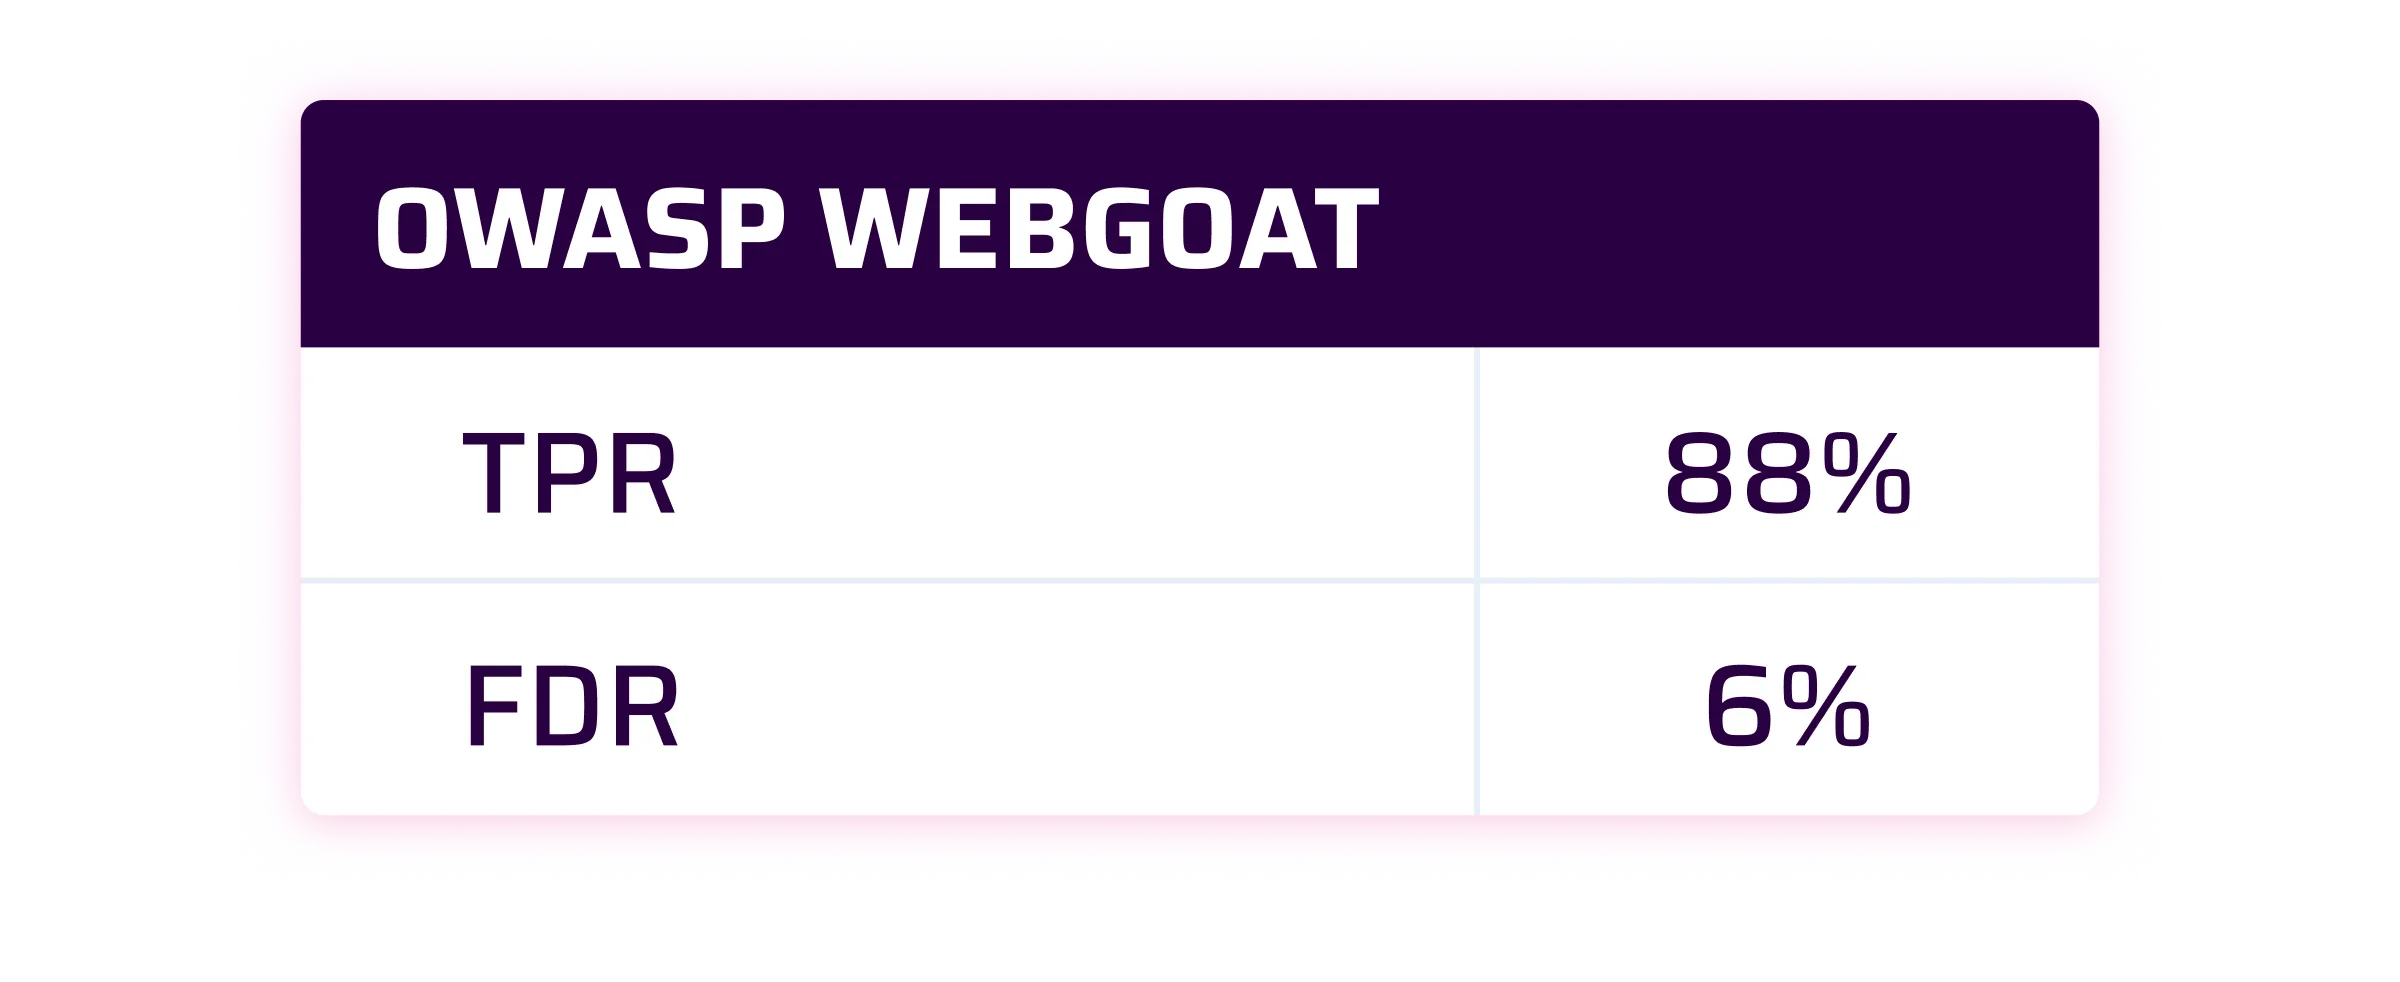 OWASP Webgoat